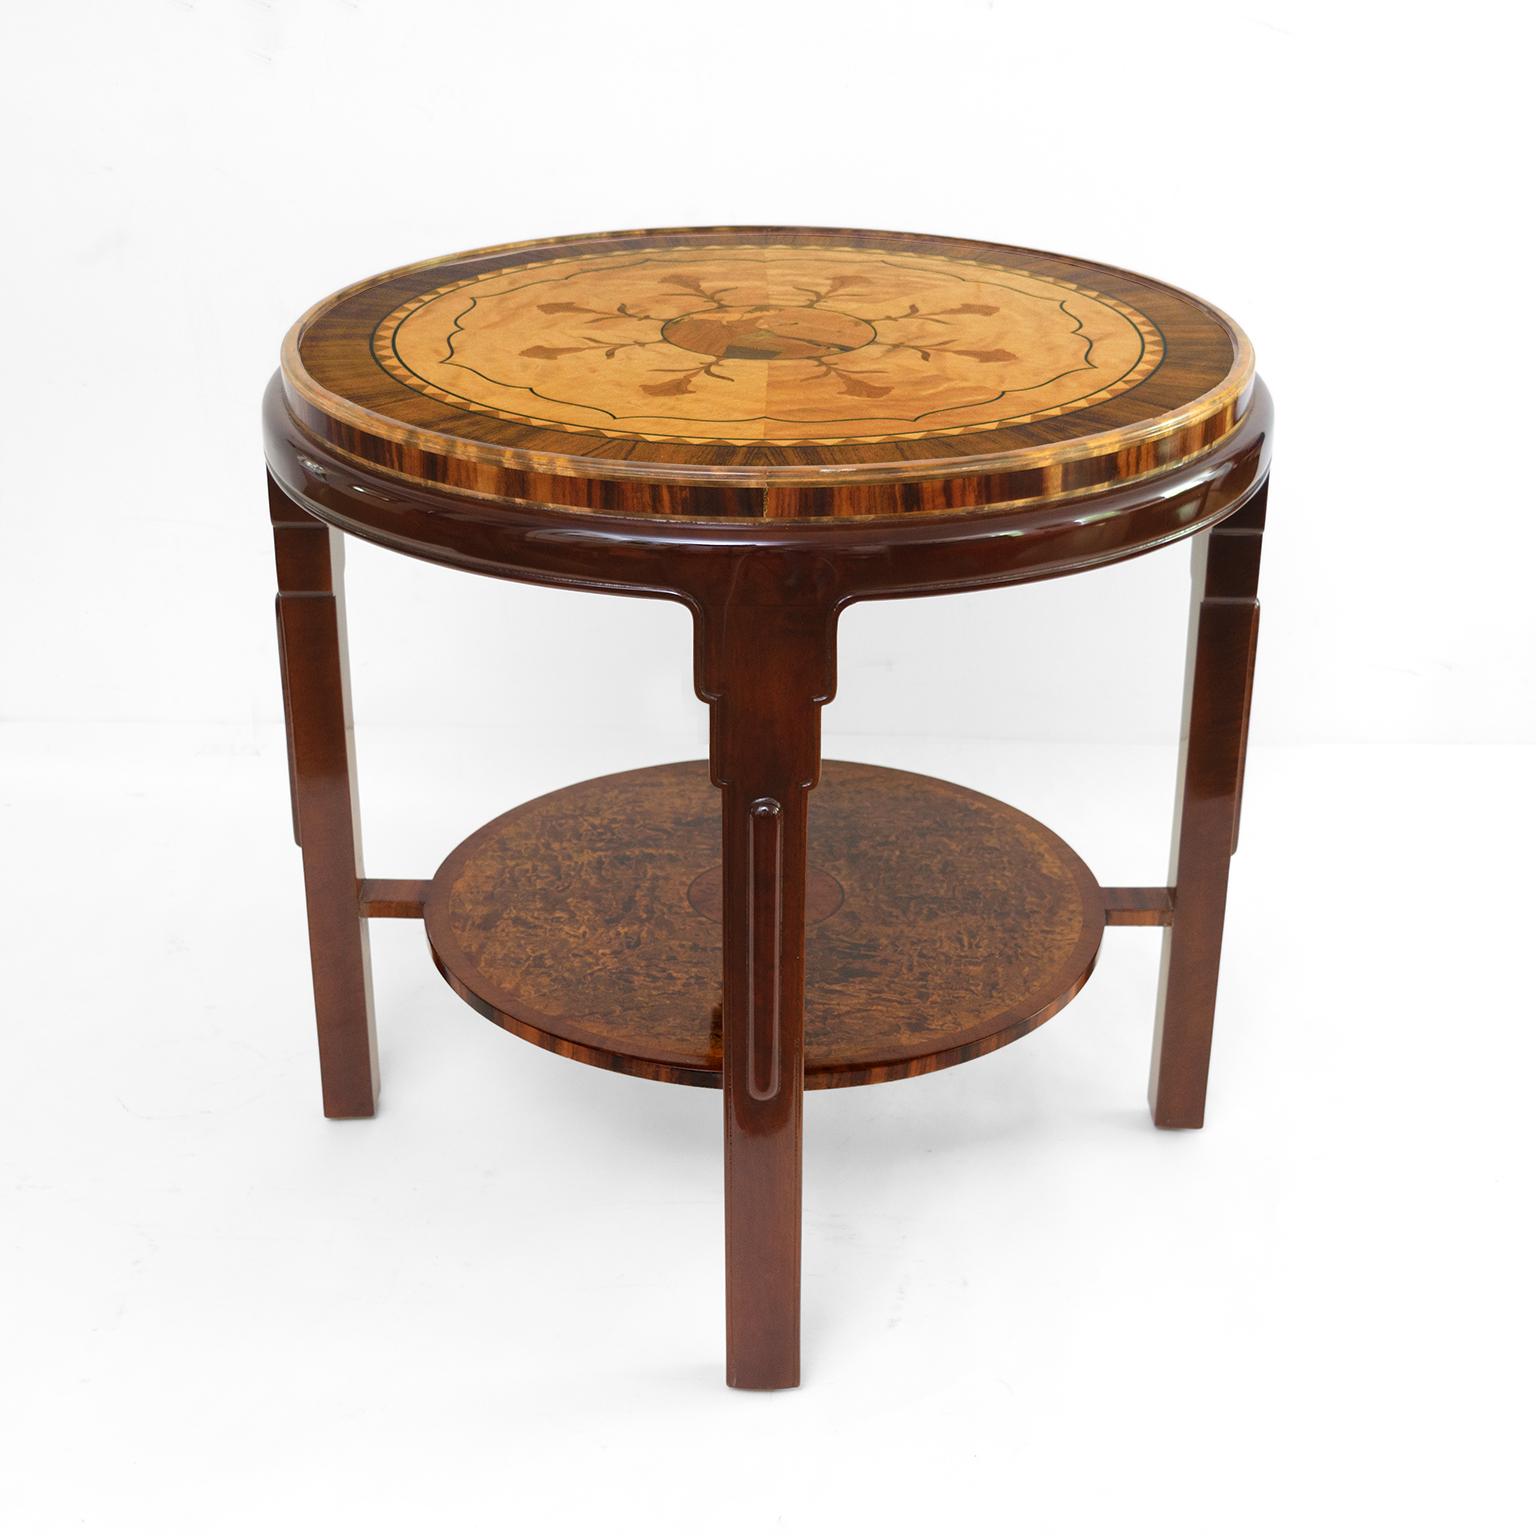 Table d'appoint Swedish Grace (1920-35) somptueusement décorée dans une variété de placages de bois exotiques. Le plateau est orné d'une bordure en bois de rose qui encadre un cercle de bouleau en huit sections, chacune présentant une tige et une